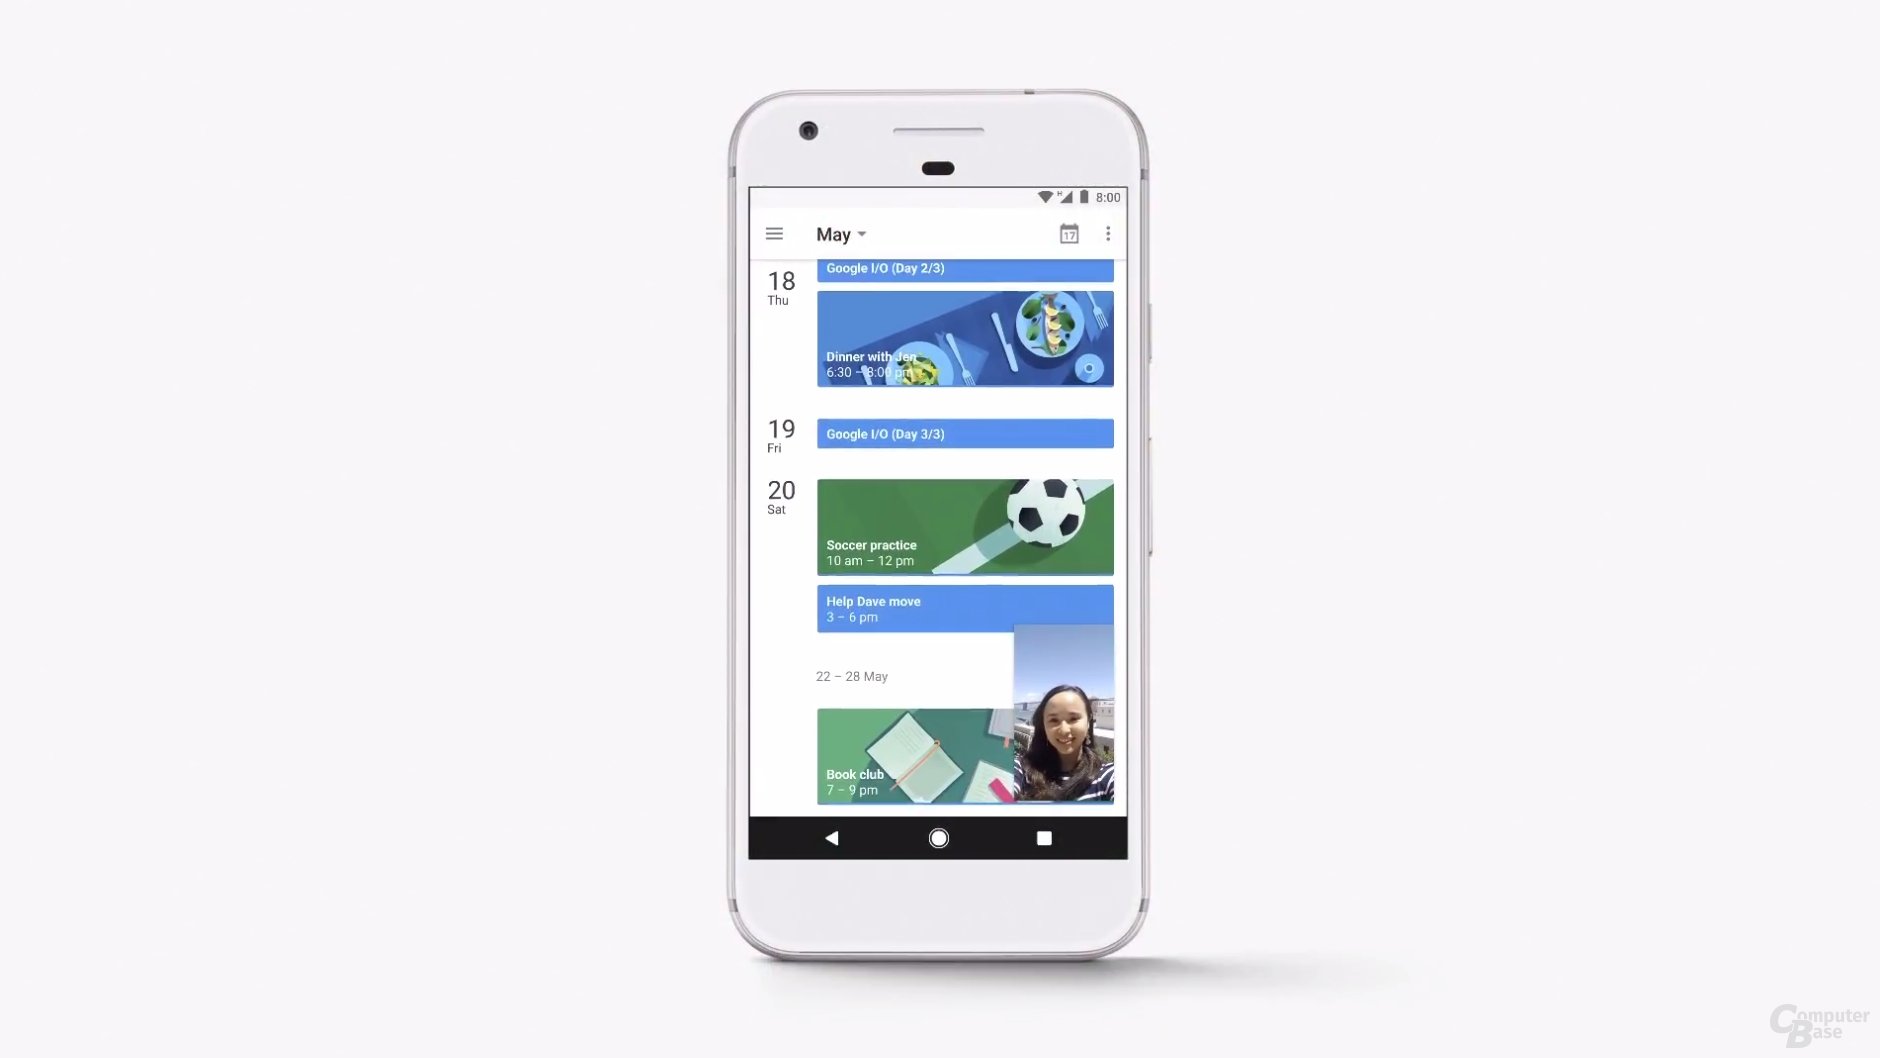 Neuer Bild-in-Bild-Modus für Android O